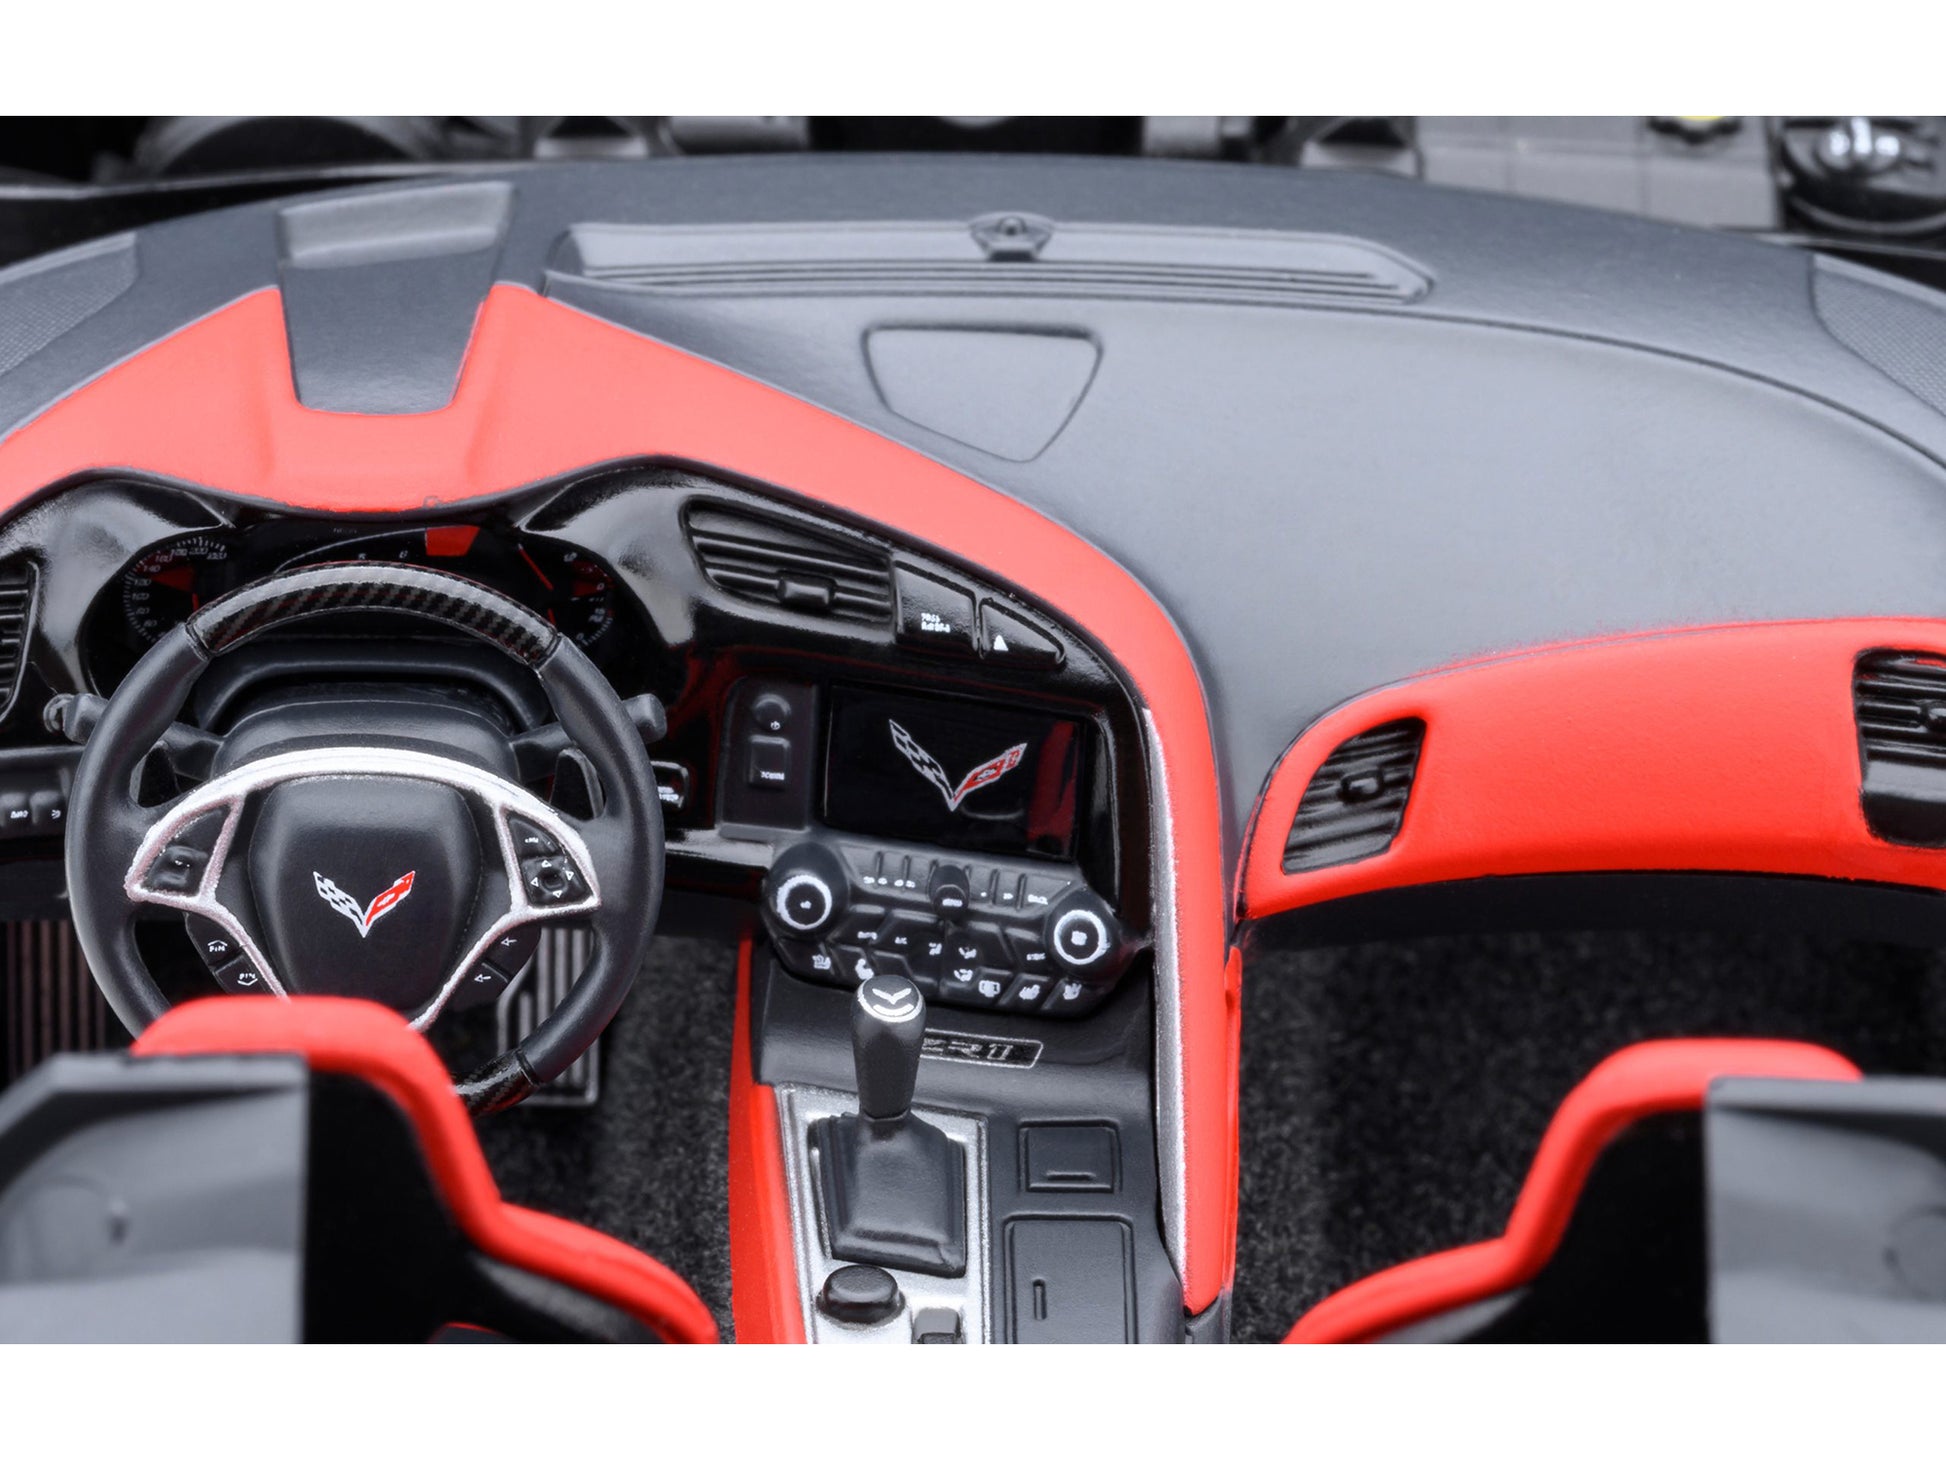 2019 chevrolet corvette c7 zr1 black with carbon top 1/18 model car